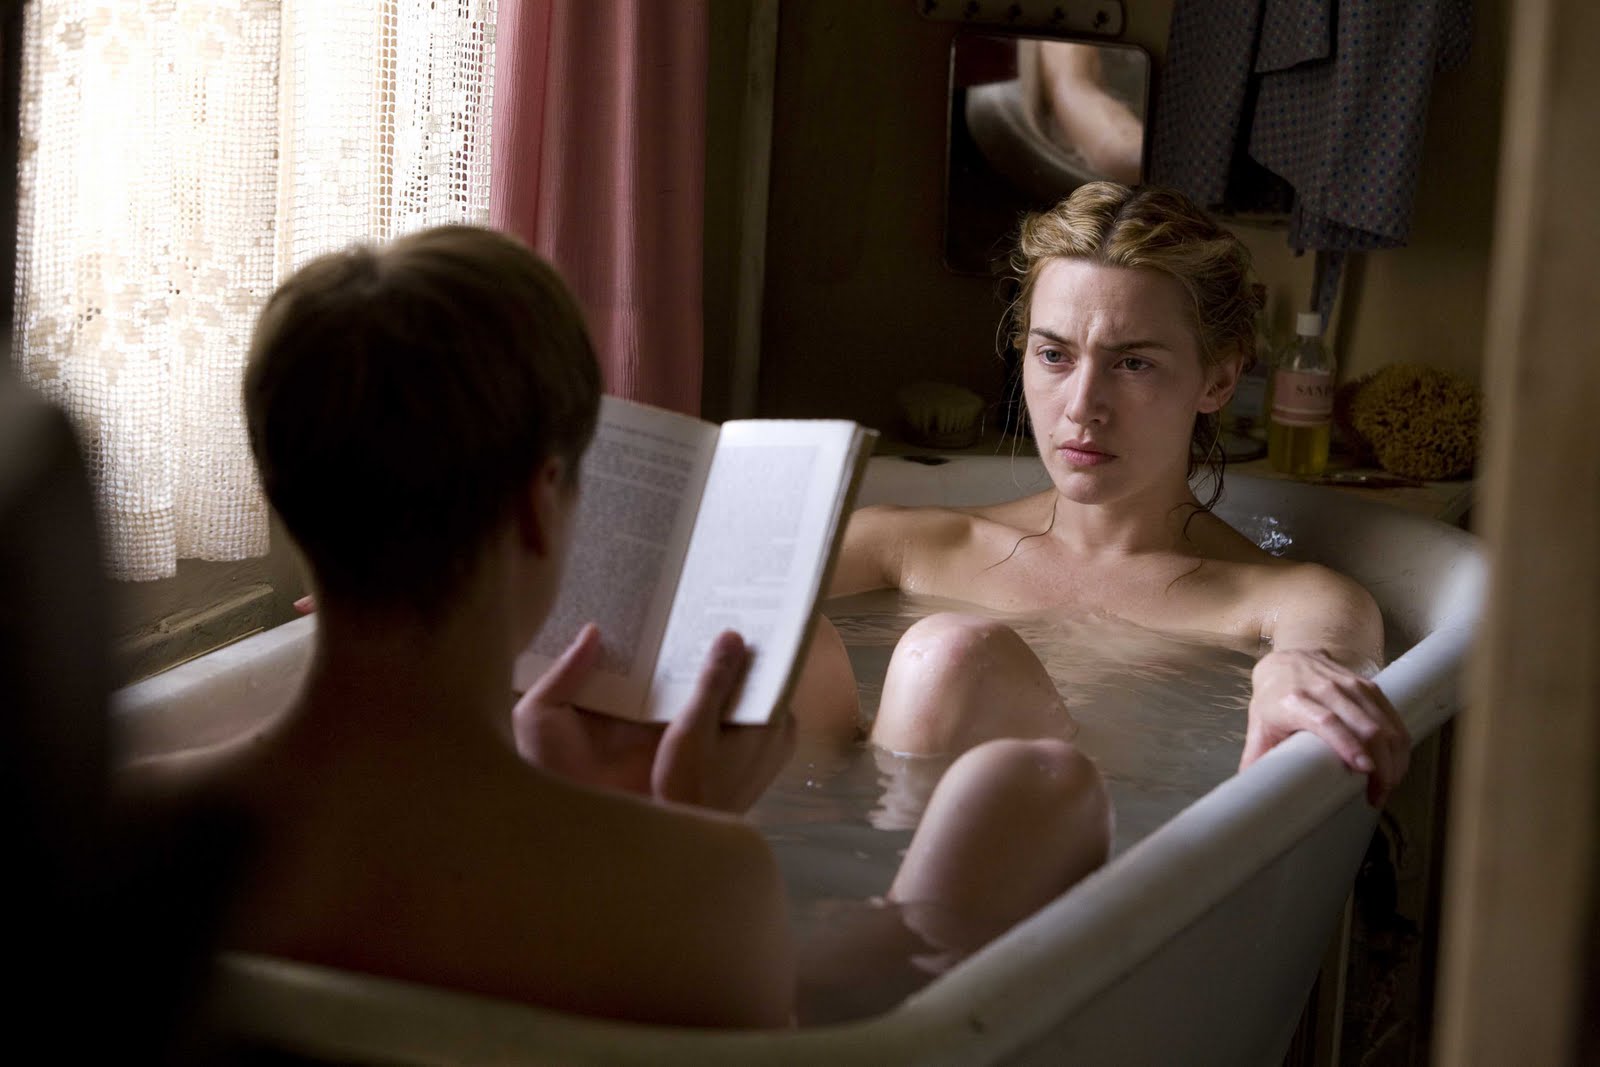 Reading in Bathtub